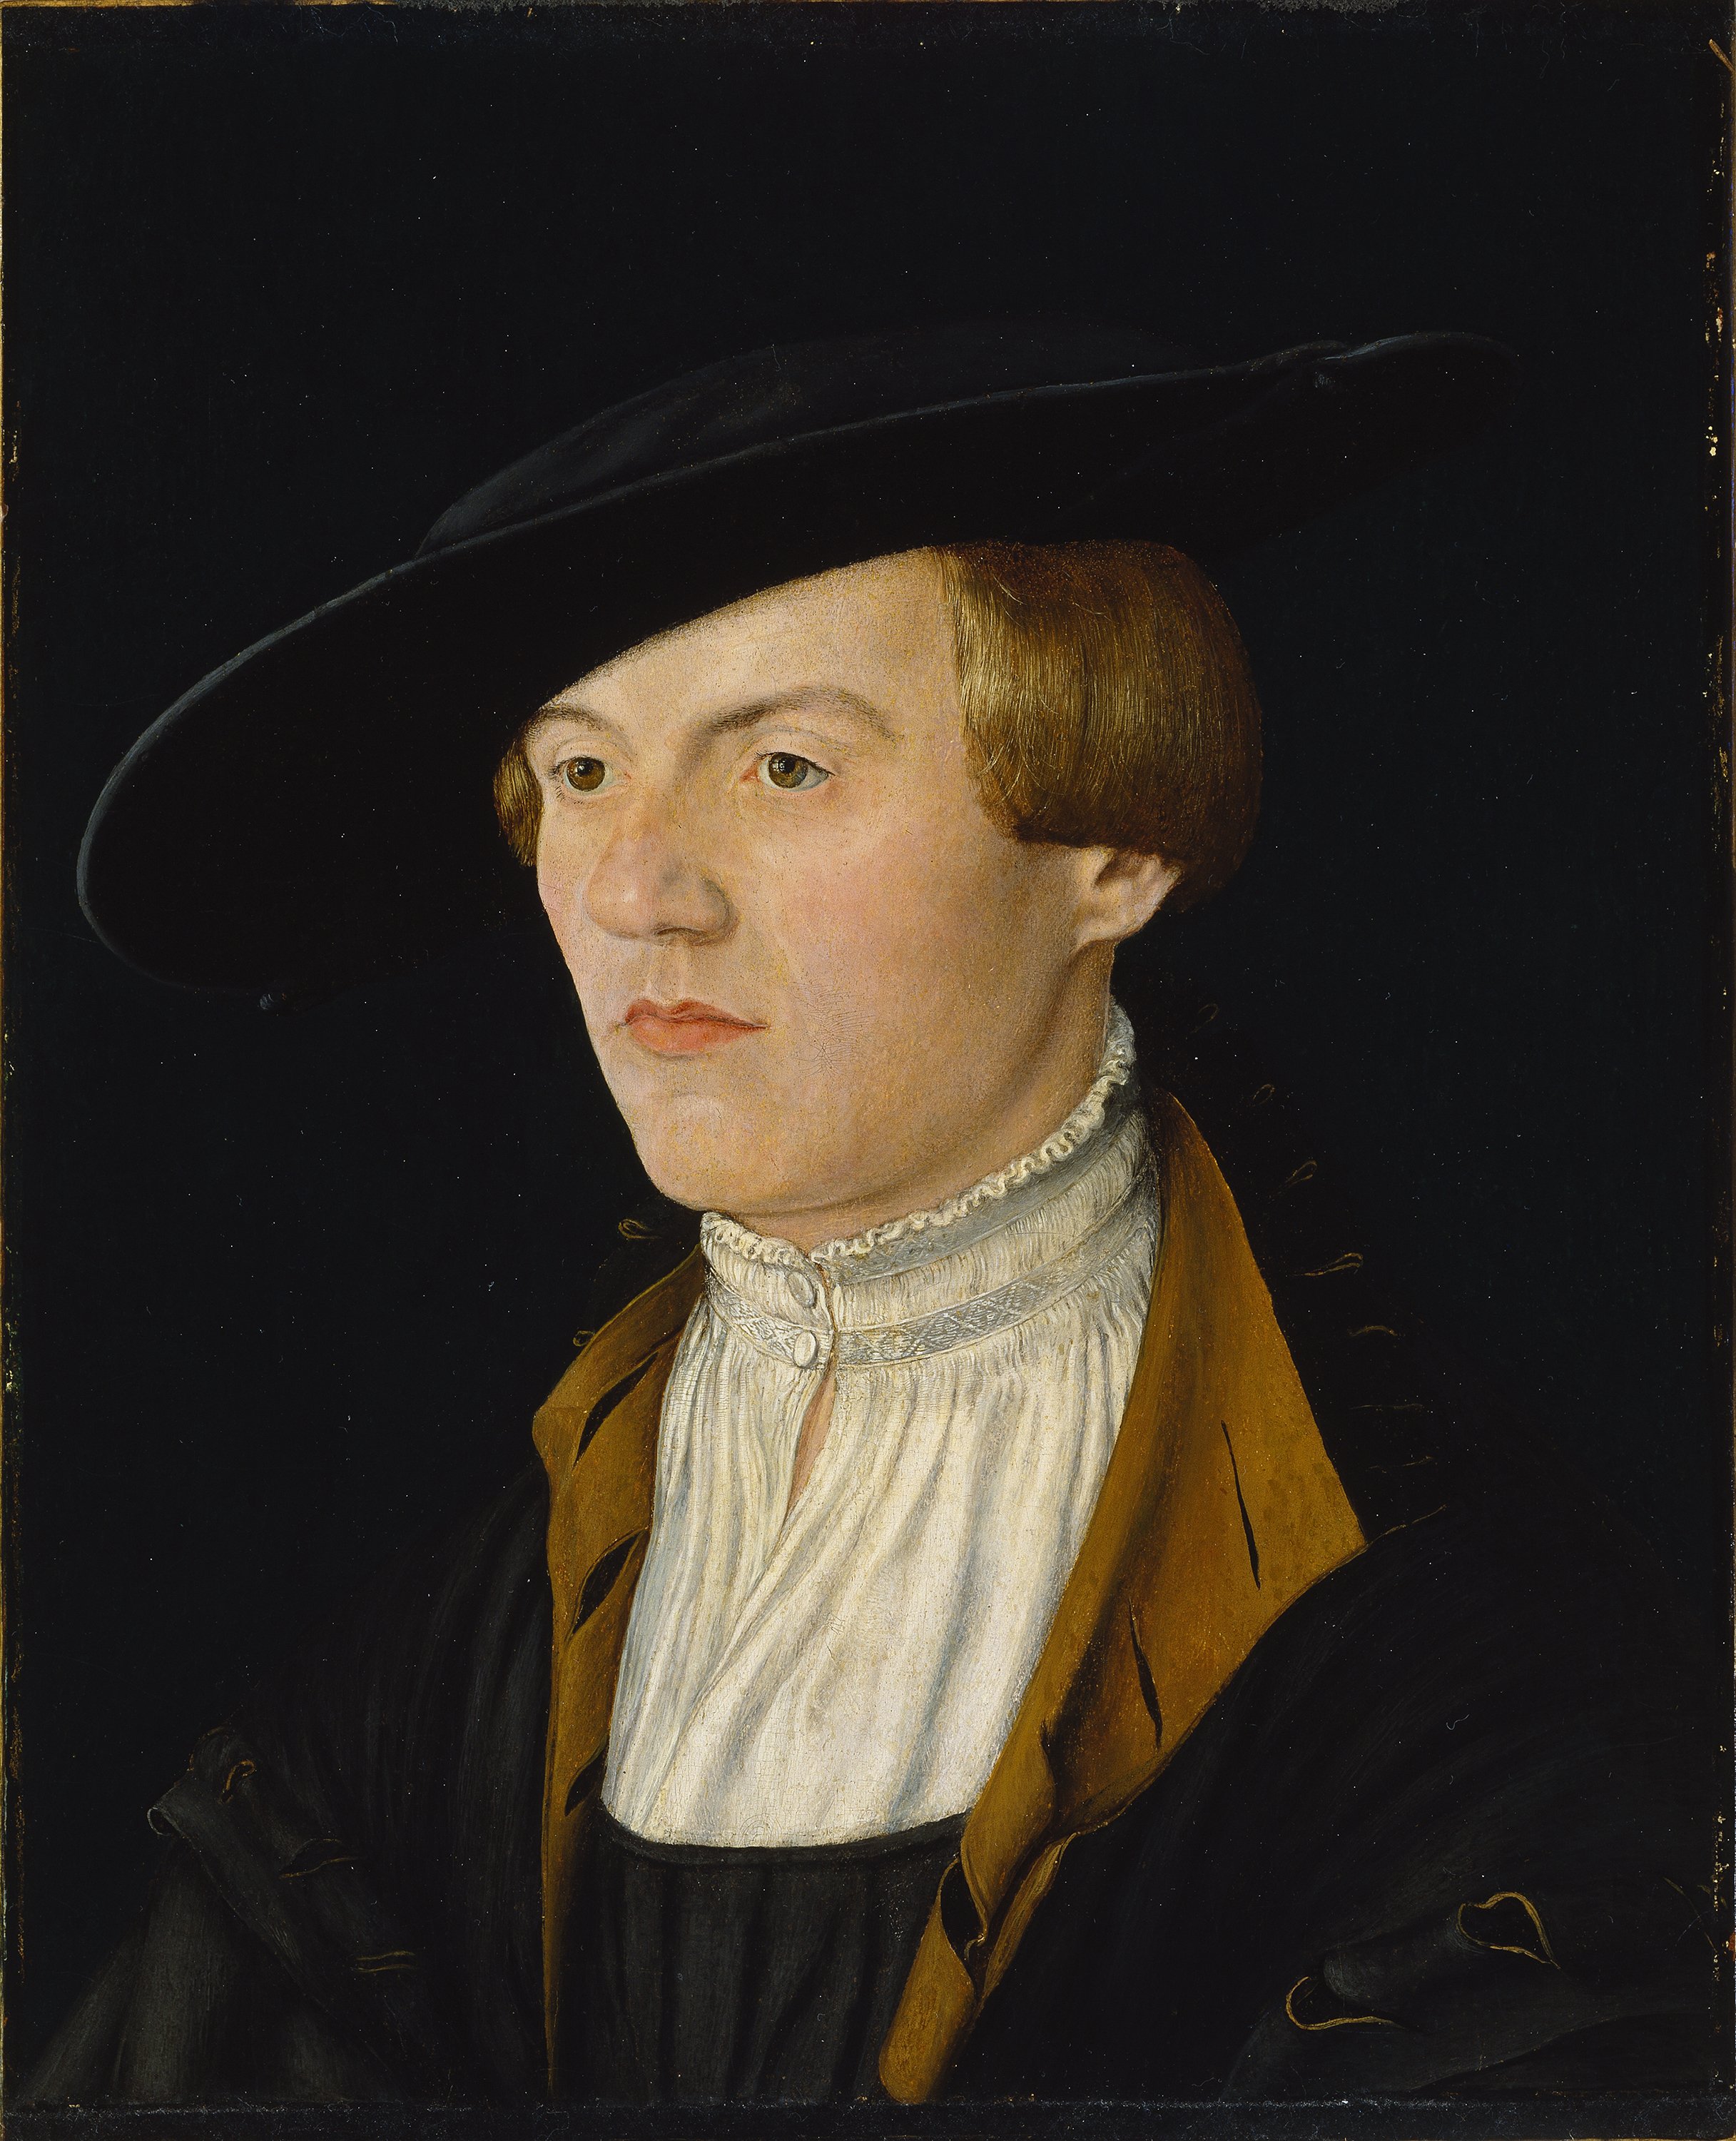 Portrait of a Young Man. Retrato de un joven, c. 1525-1530